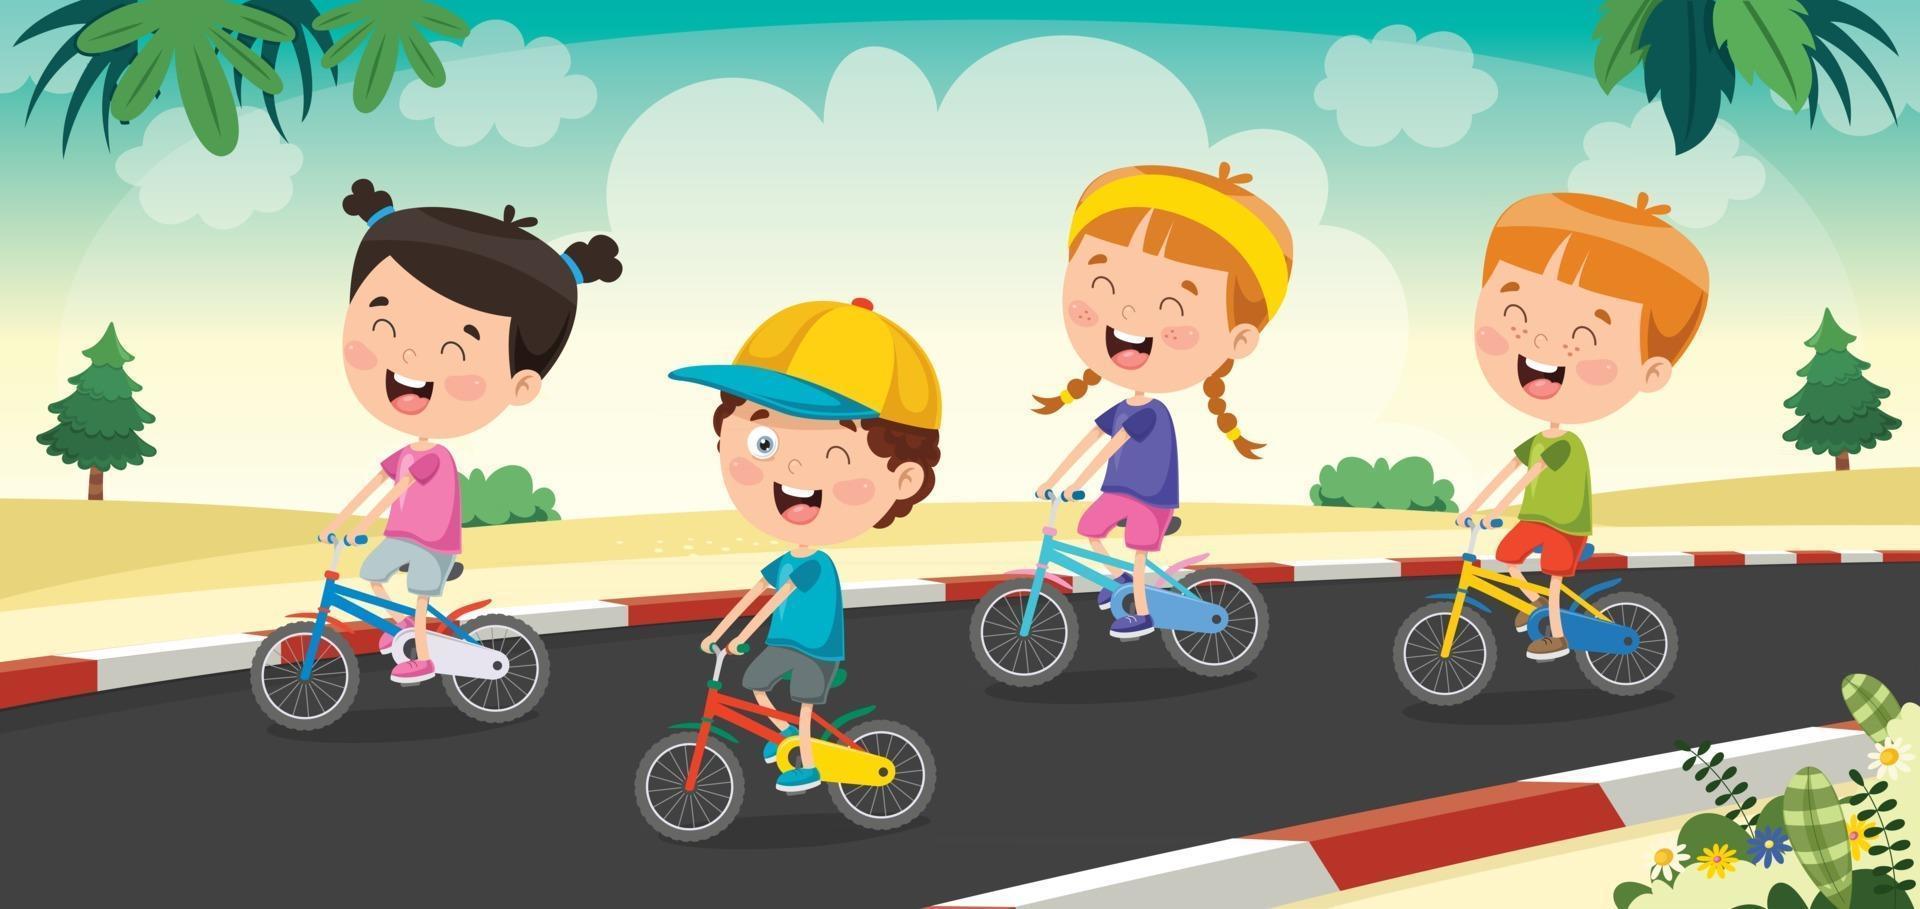 bambini felici che vanno in bicicletta vettore